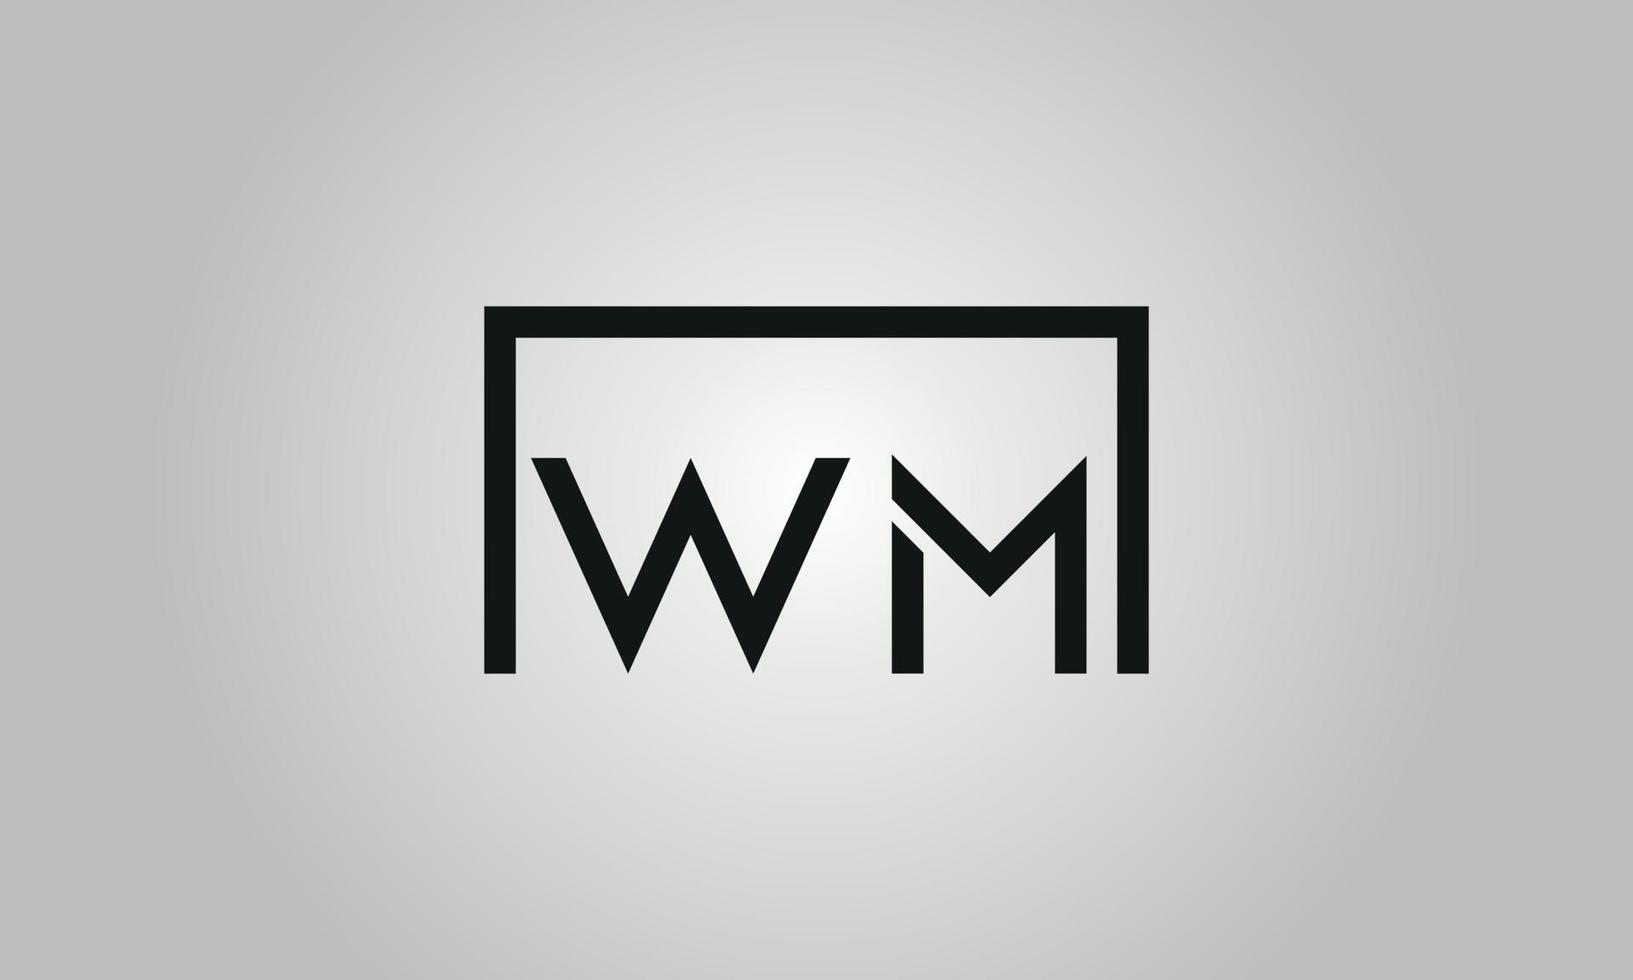 brief wm logo ontwerp. wm logo met plein vorm in zwart kleuren vector vrij vector sjabloon.